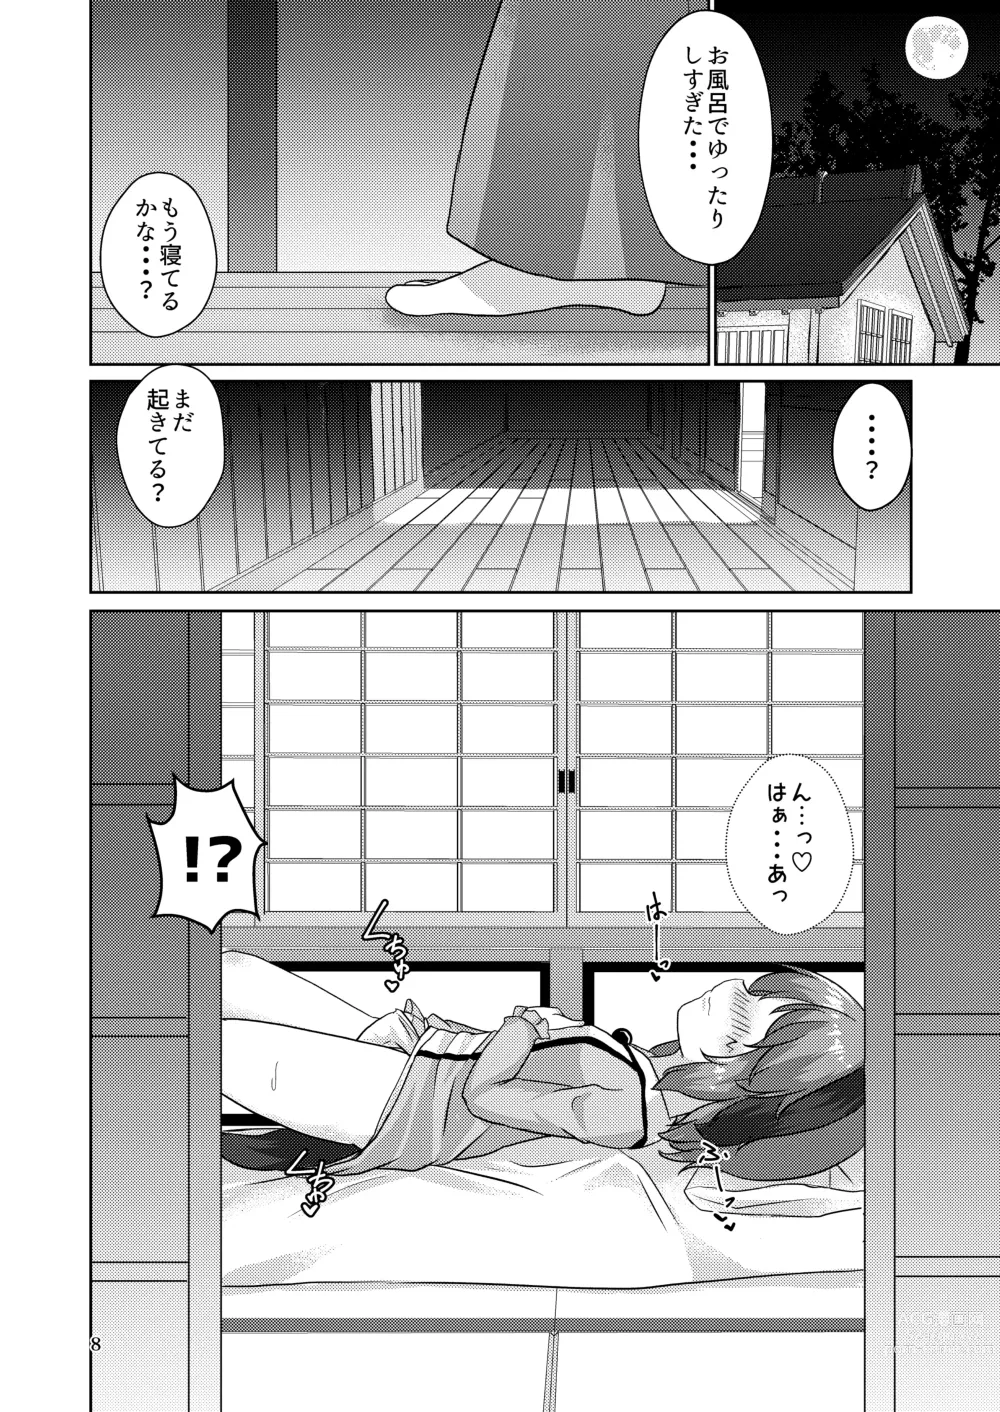 Page 8 of doujinshi Yamabiko no Kakushigoto